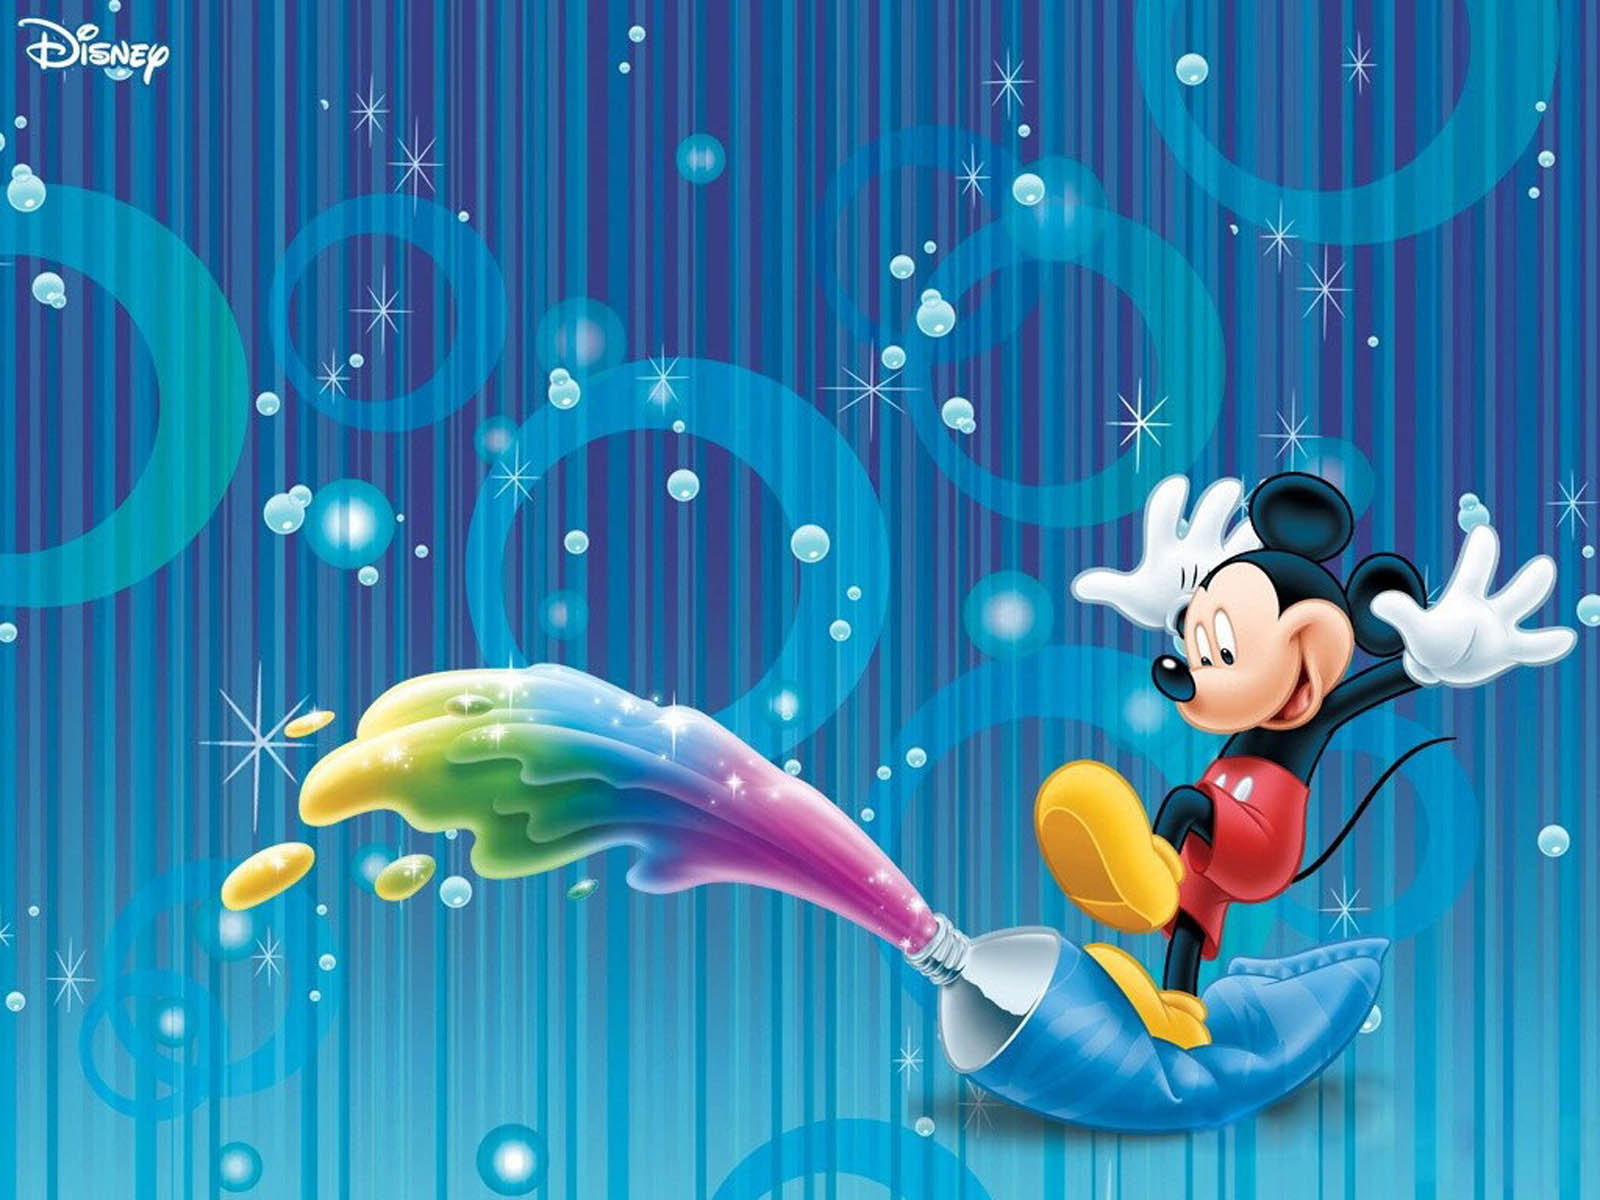 50+] Mickey Mouse Wallpaper for Desktop - WallpaperSafari